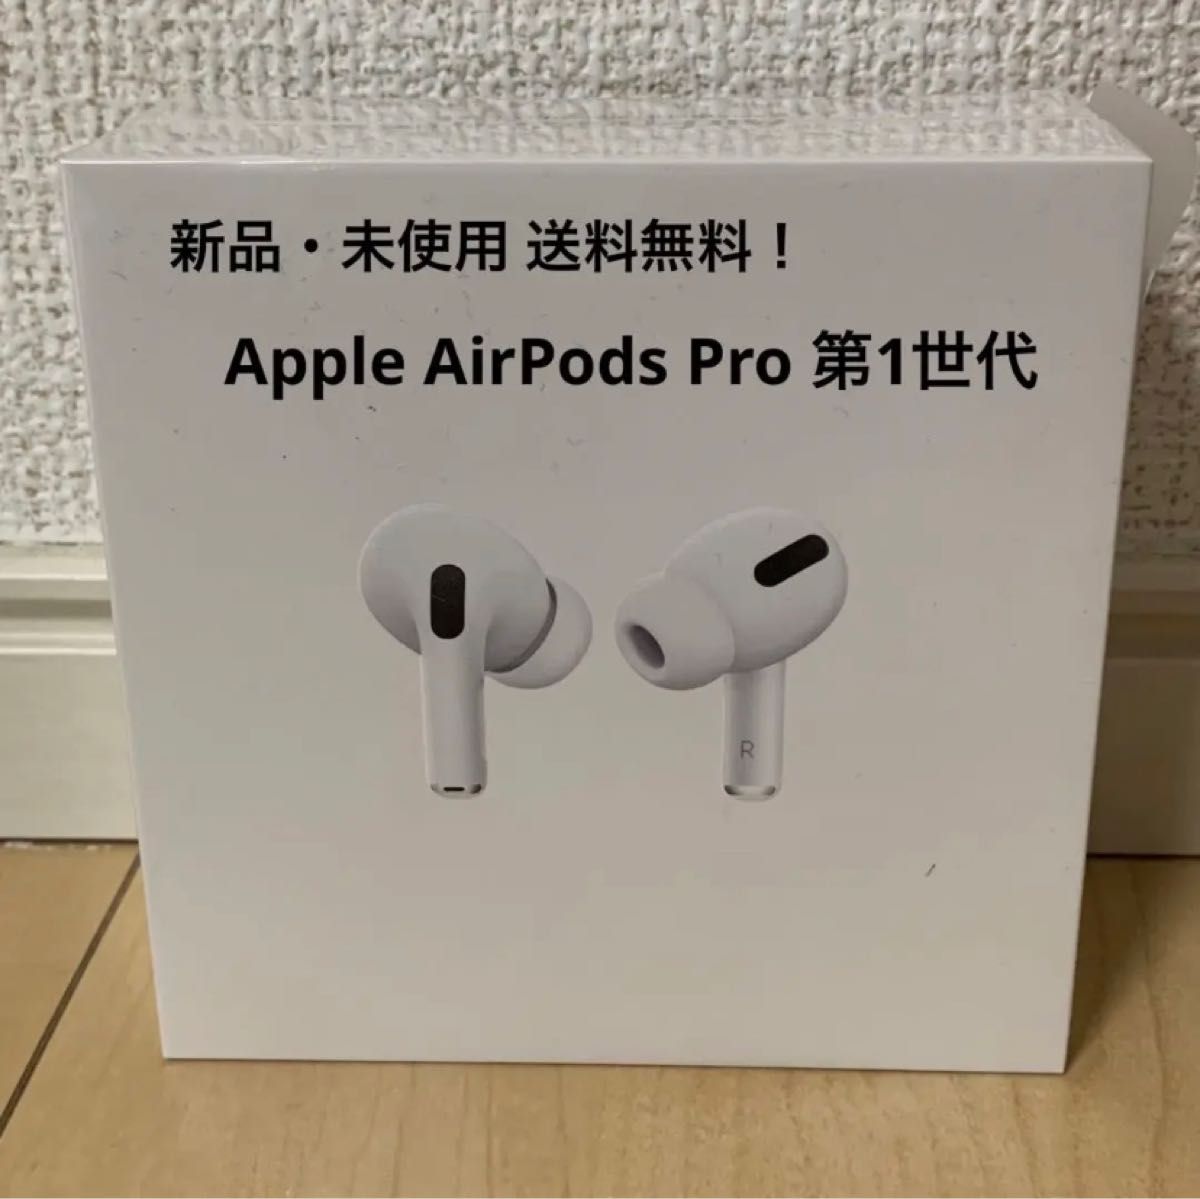 Apple AirPods Pro アップル エア ポッズ プロ 第1世代 新型 ワイヤレスイヤホン iPhone イヤホン